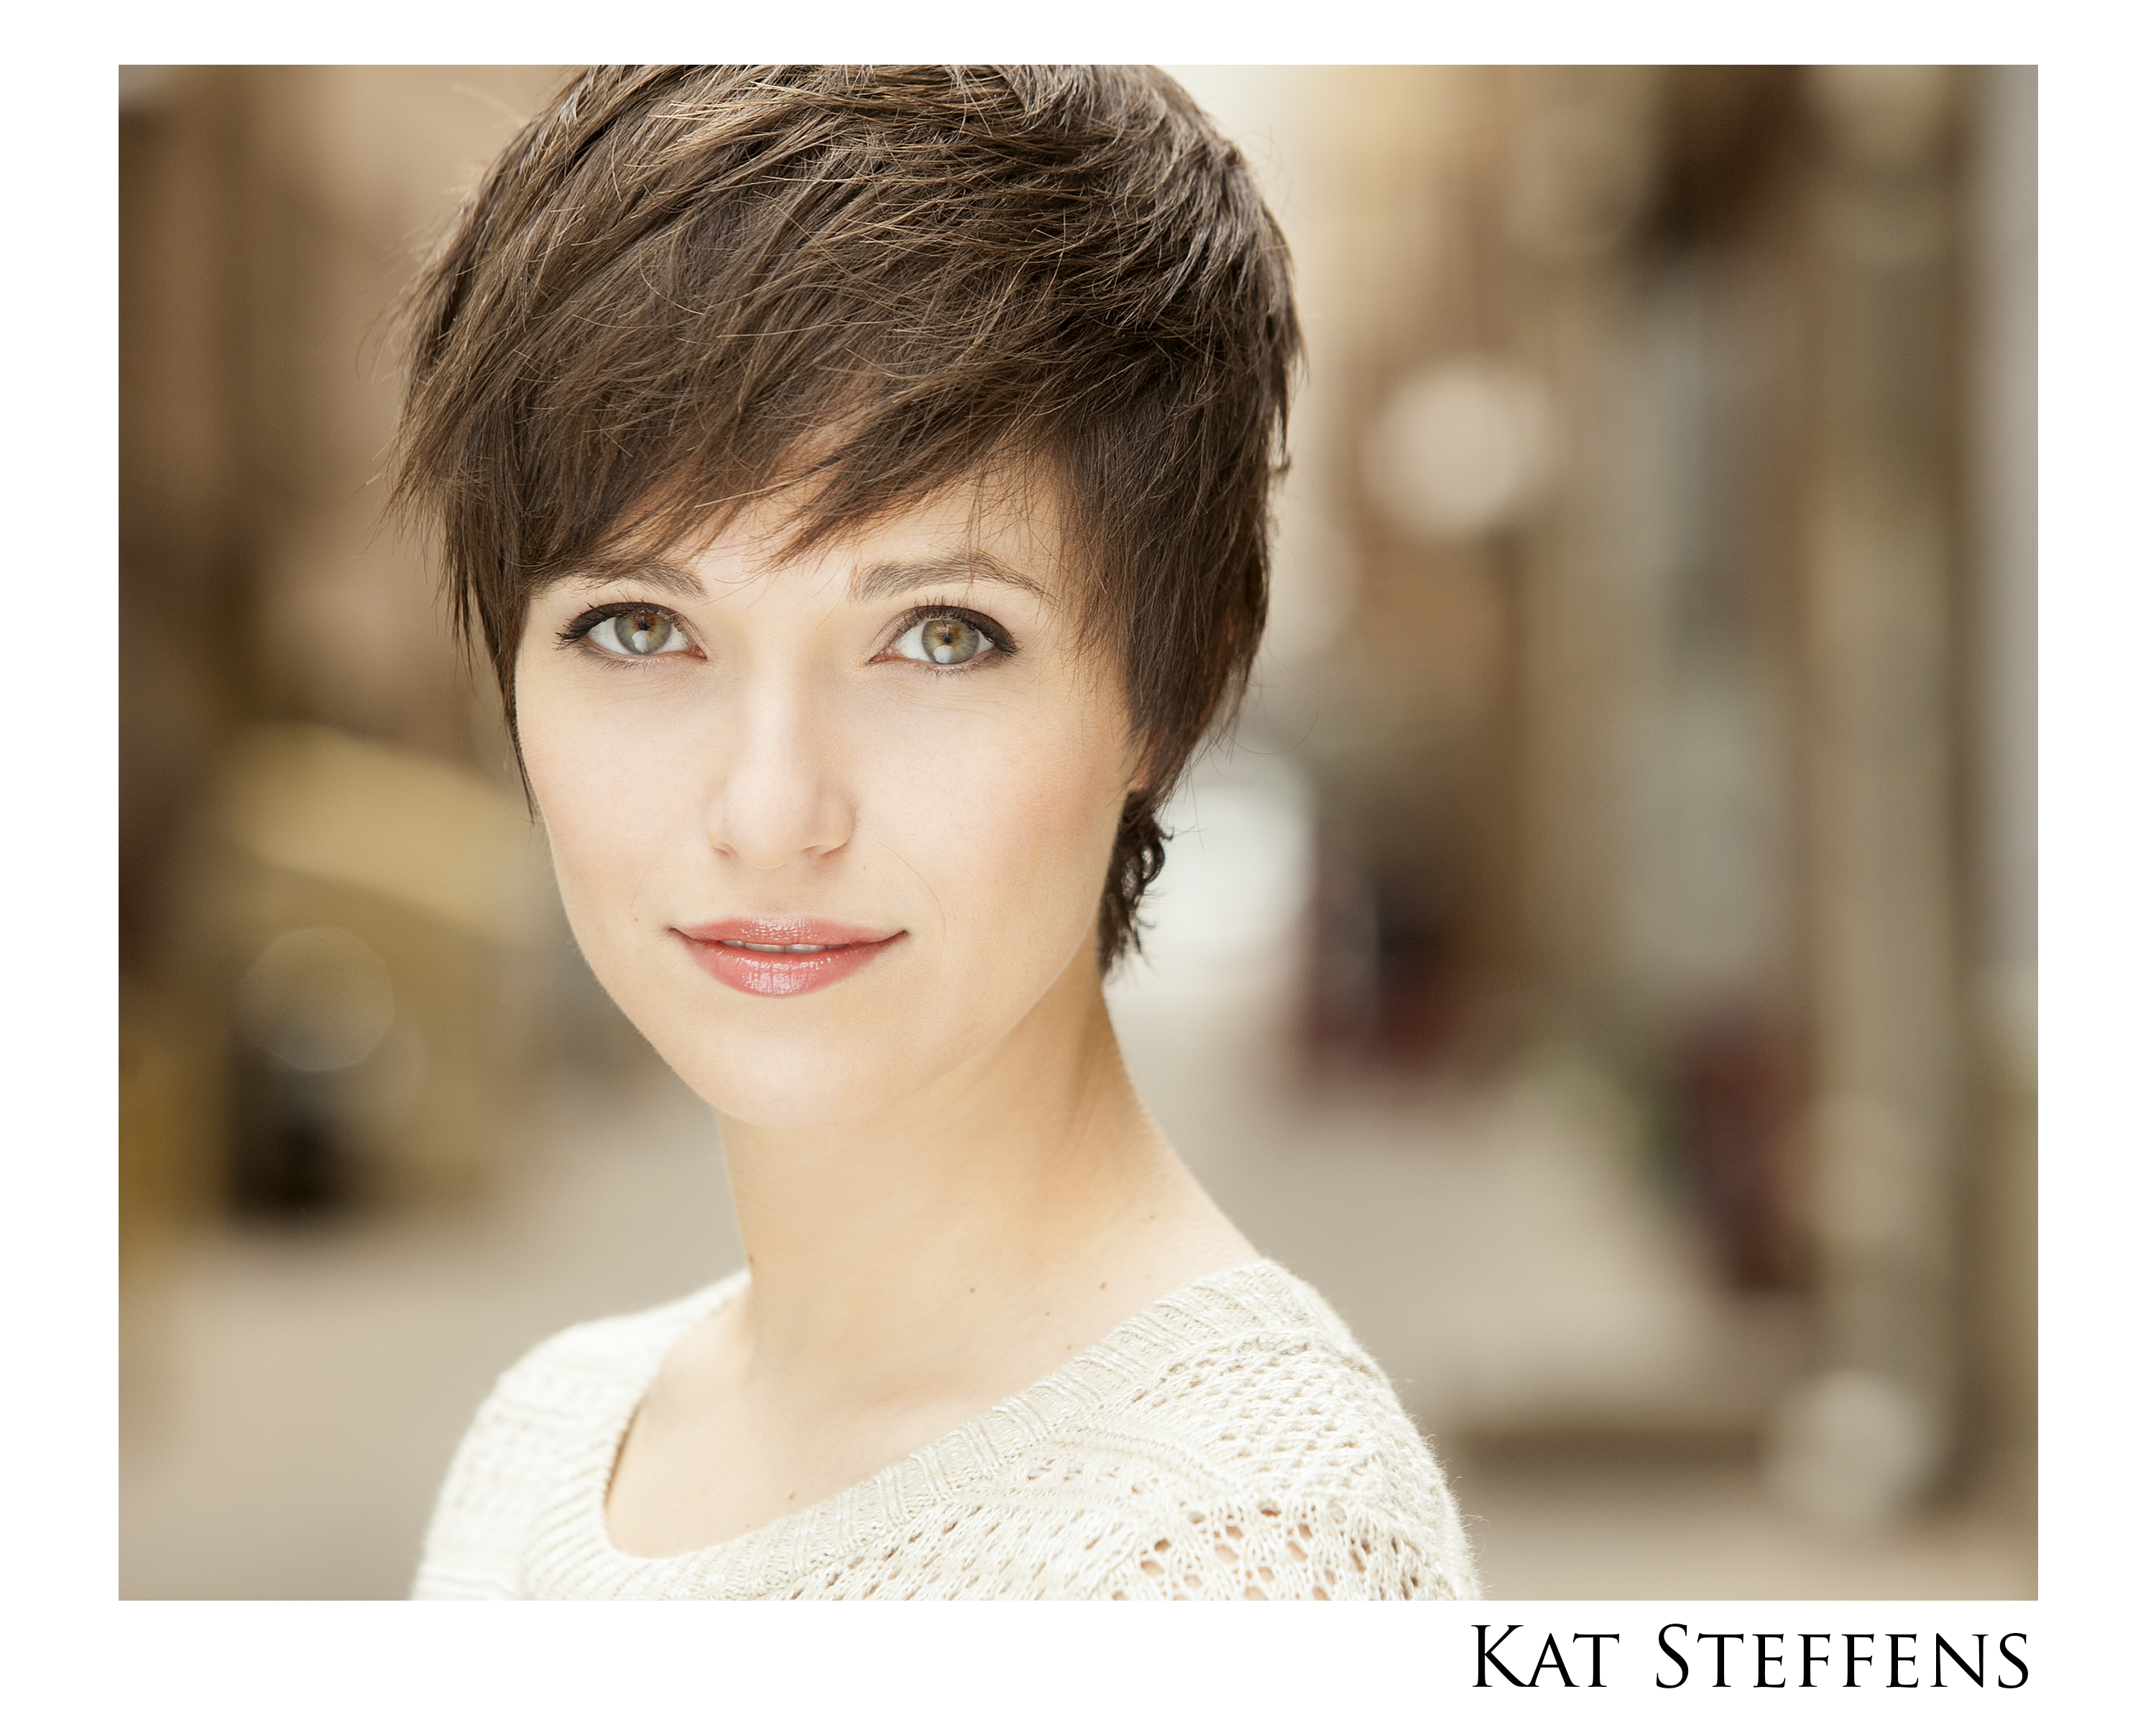 Kat Steffens